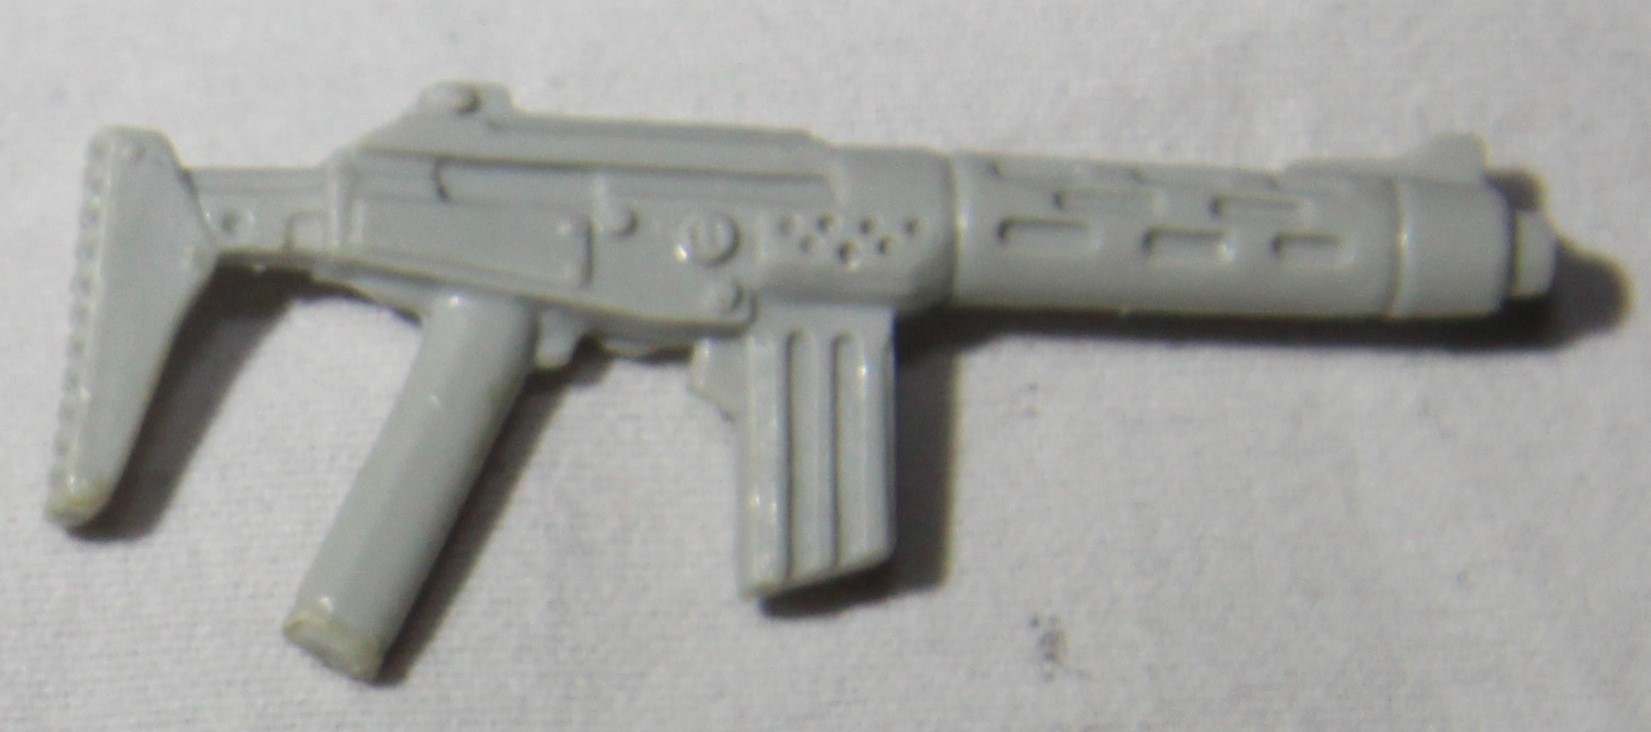 1986 Dialtone Gun